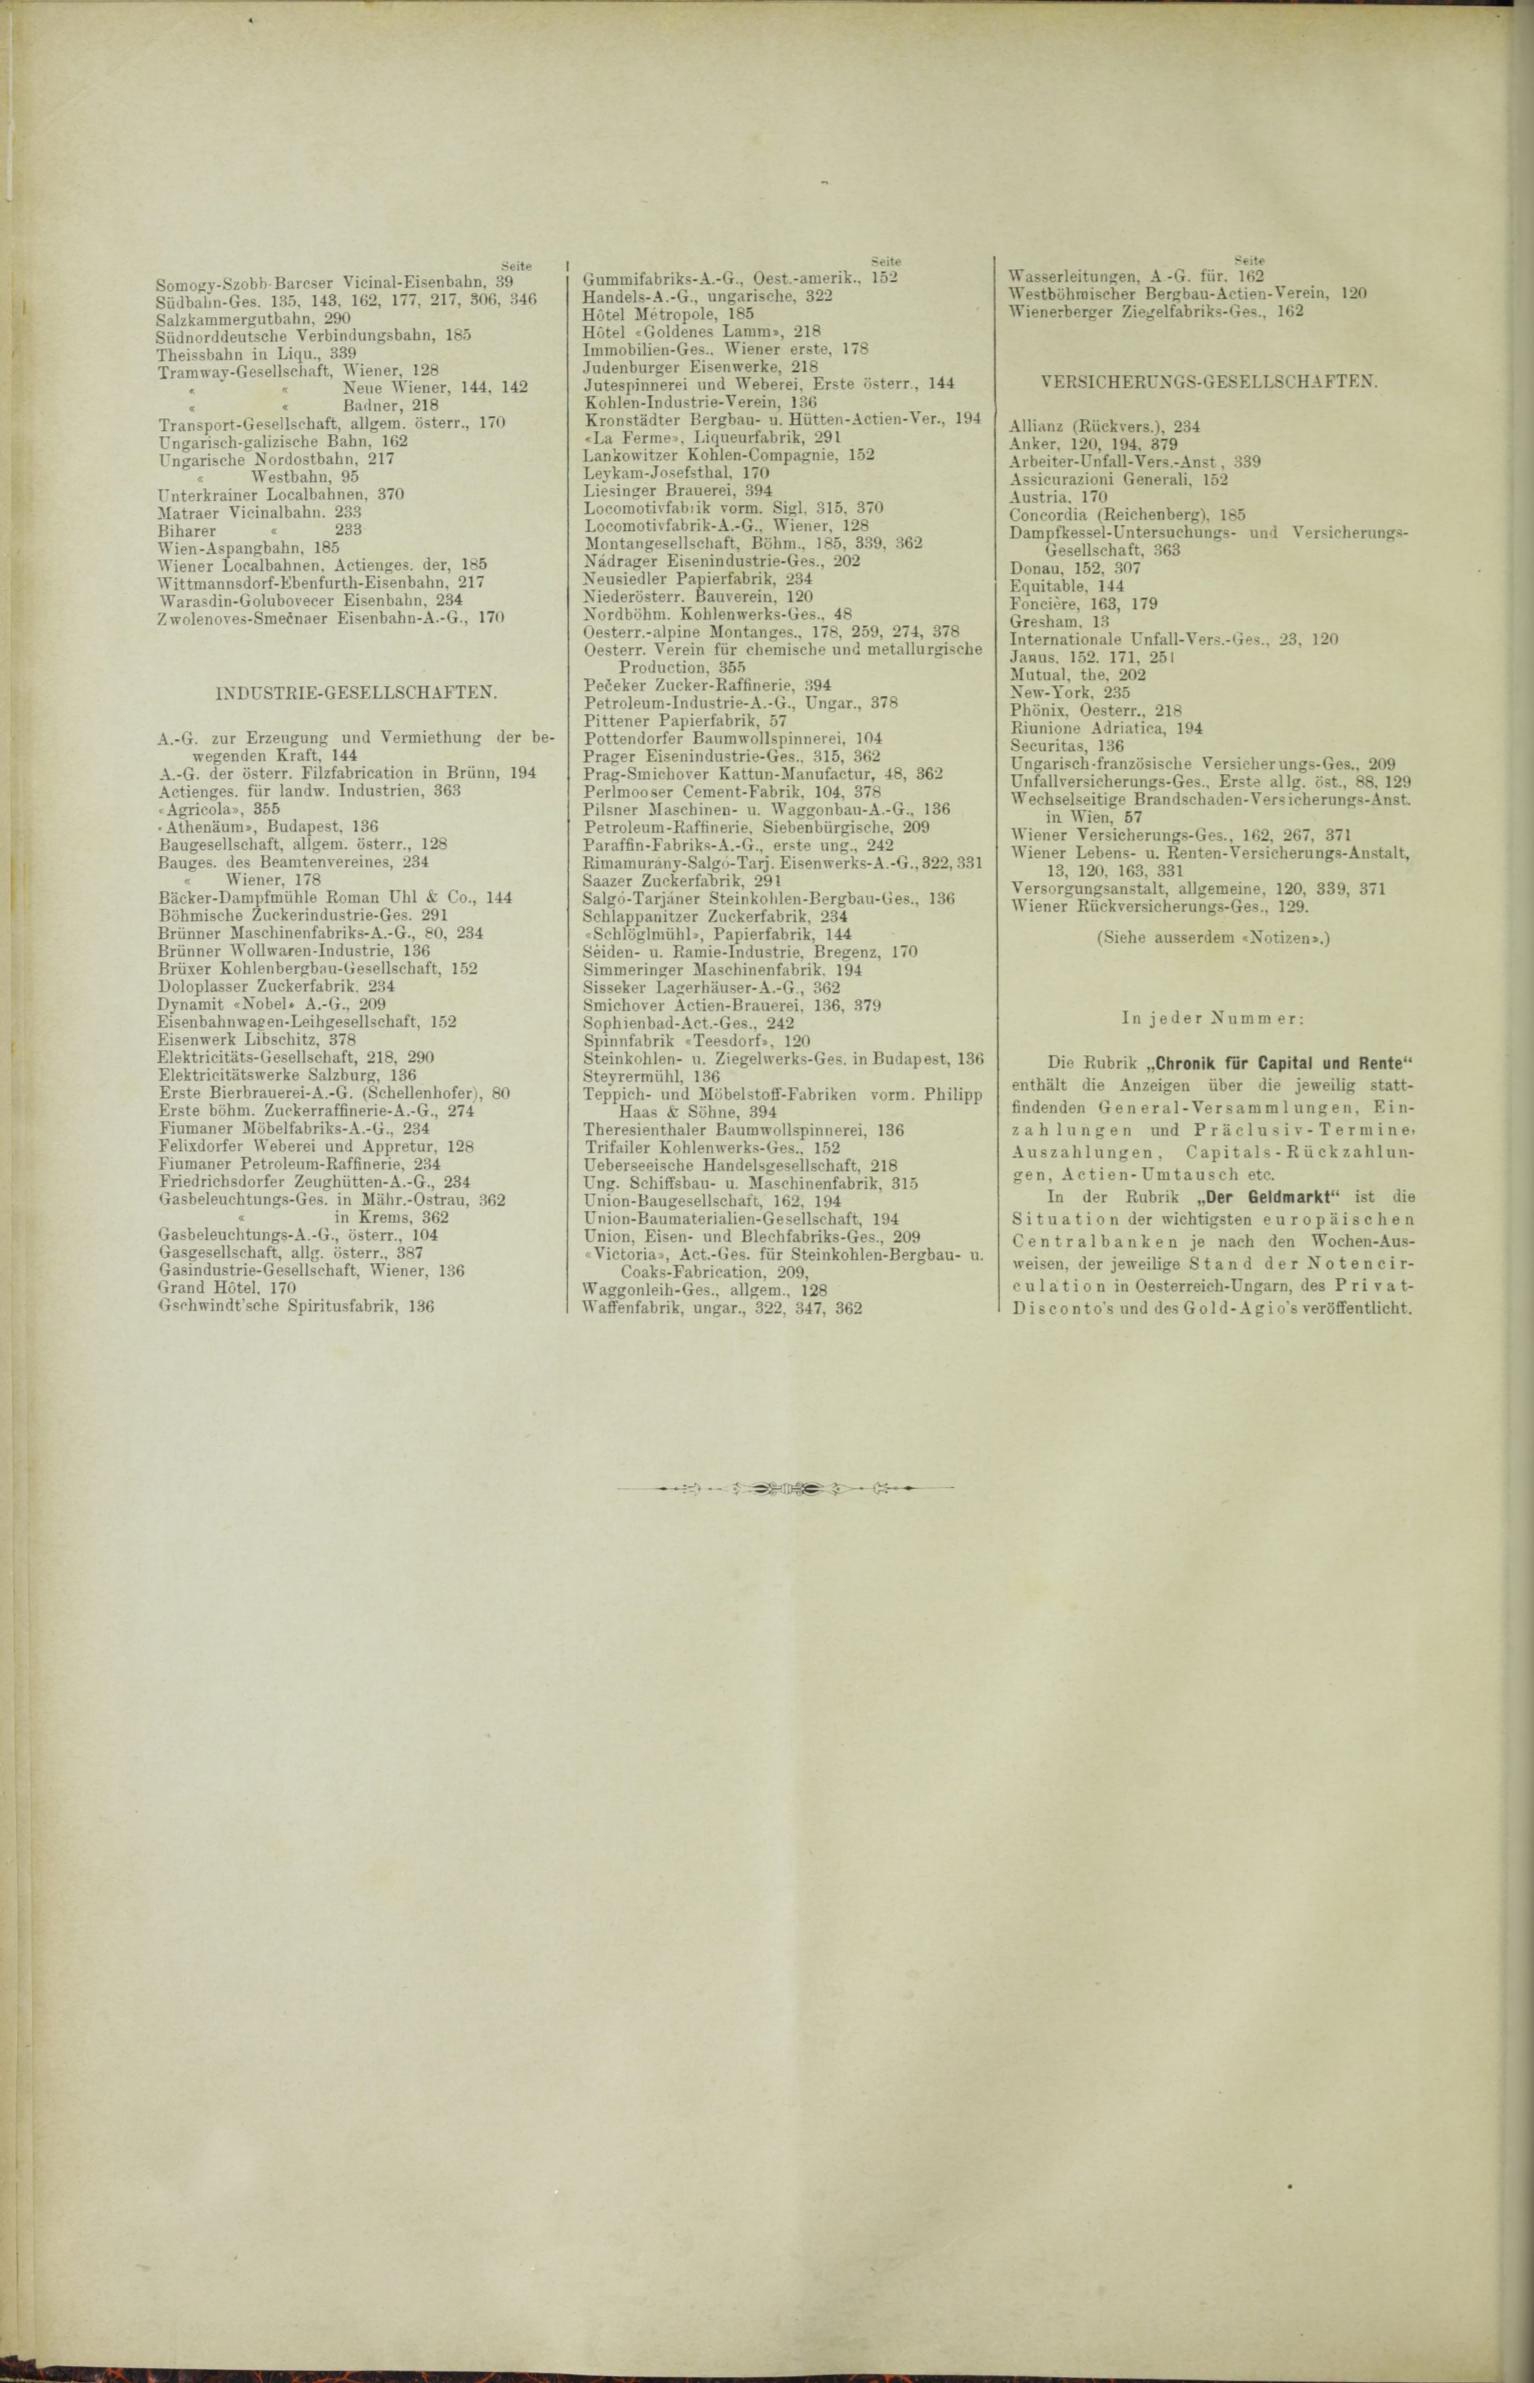 Der Tresor 03.07.1890 - Page 12